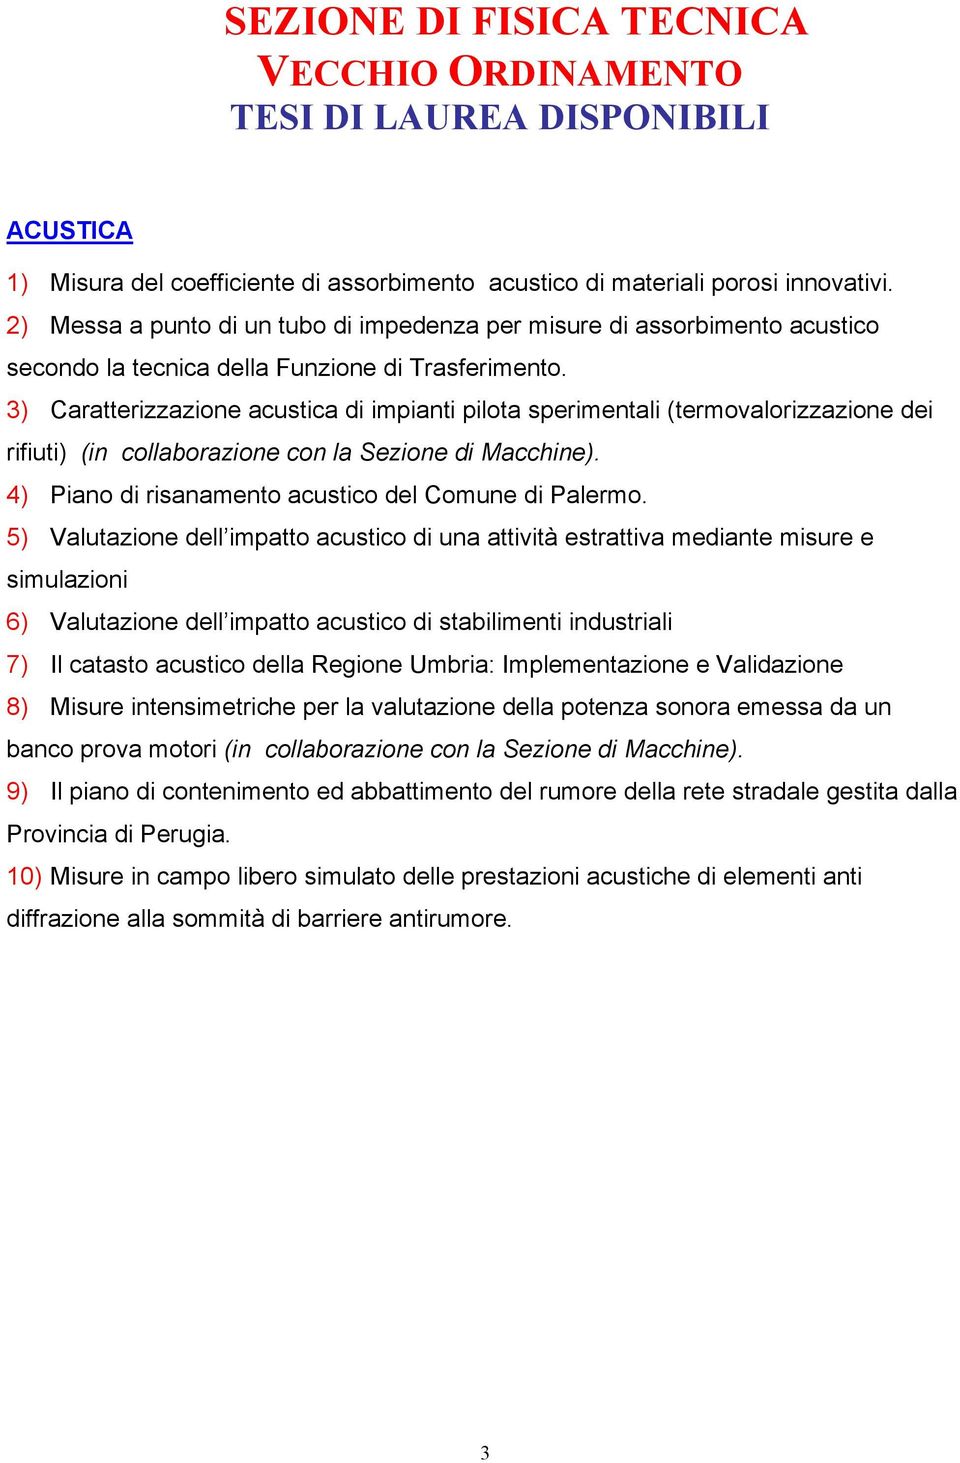 3) Caratterizzazione acustica di impianti pilota sperimentali (termovalorizzazione dei rifiuti) (in collaborazione con la Sezione di Macchine). 4) Piano di risanamento acustico del Comune di Palermo.